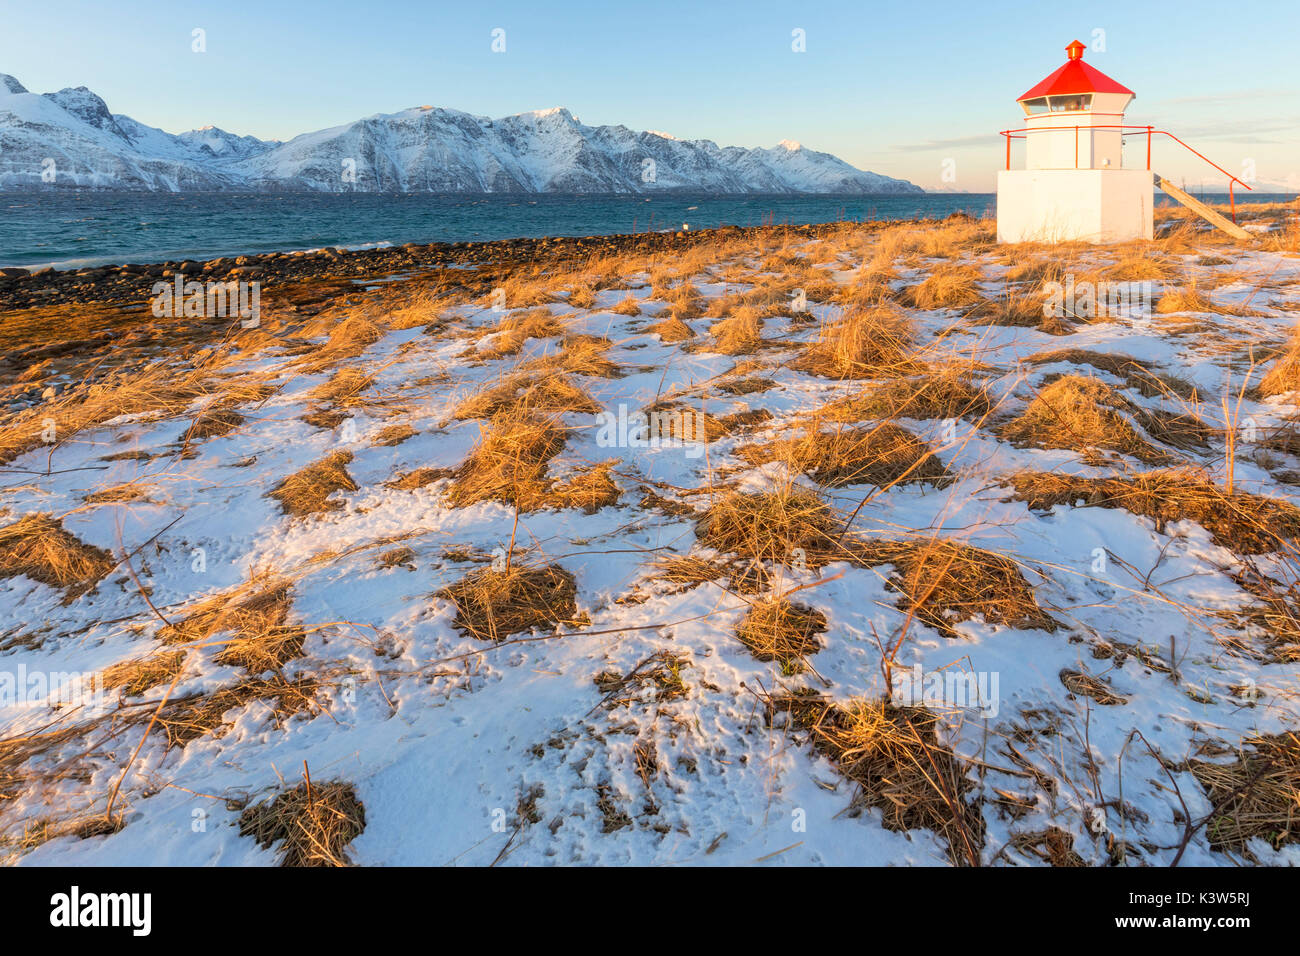 Die Sonne beleuchtet die Küste in der Nähe von einem traditionellen Leuchtturm. Spaknesora Naturreservat, Djupvik, Lyngenfjord, Lyngen Alpen, Troms, Norwegen, Lappland, Europa. Stockfoto